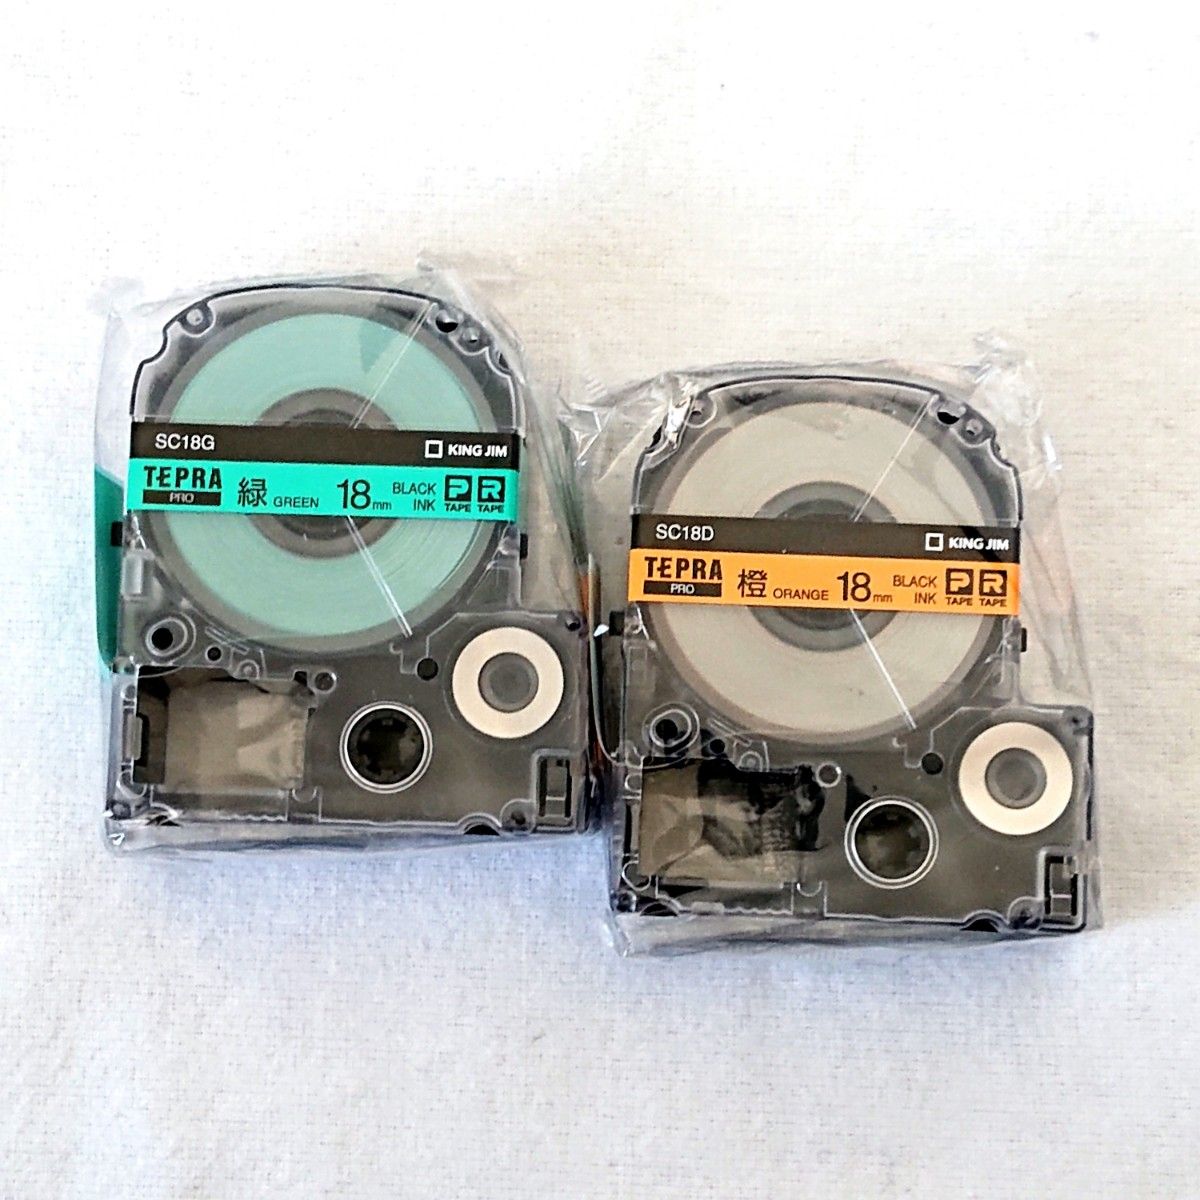 テプラテープ キングジム テプラPRO 純正品パステル18㎜の緑・オレンジ・黄・白・ピンク・青の6色セット【PとRの両機種に対応】